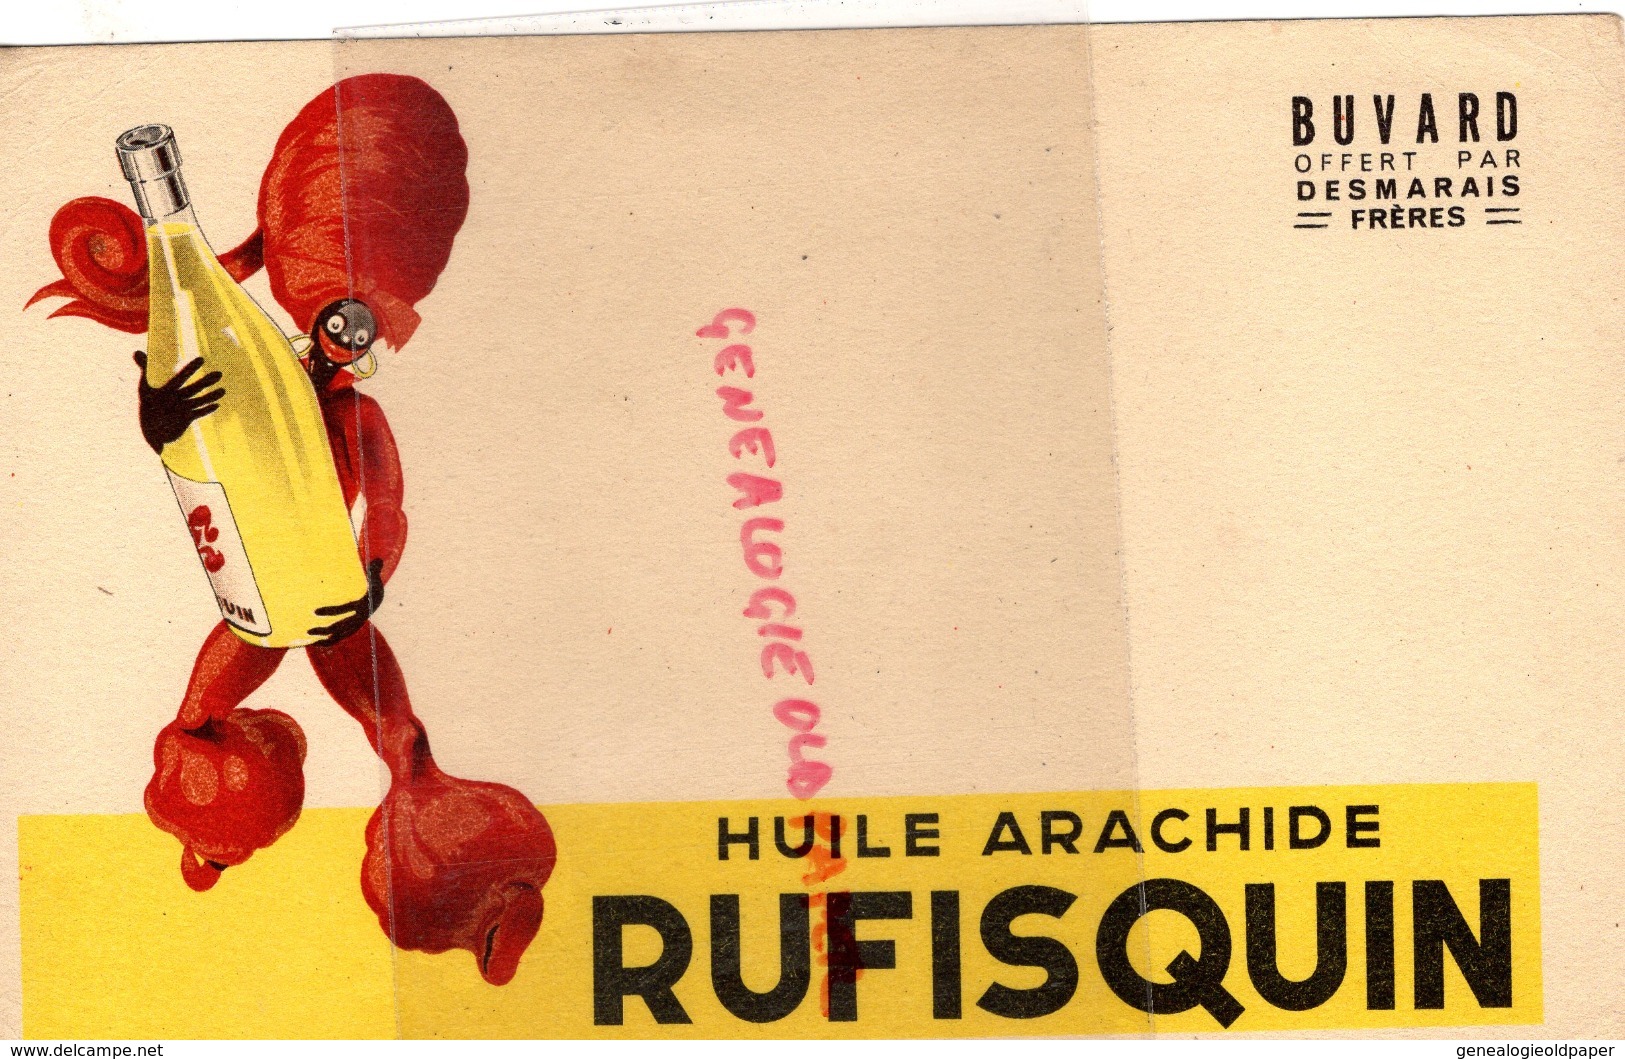 BUVARD HUILE ARACHIDE RUFISQUIN- DESMARAIS FRERES PARIS- HUILERIE - Perfumería & Droguería